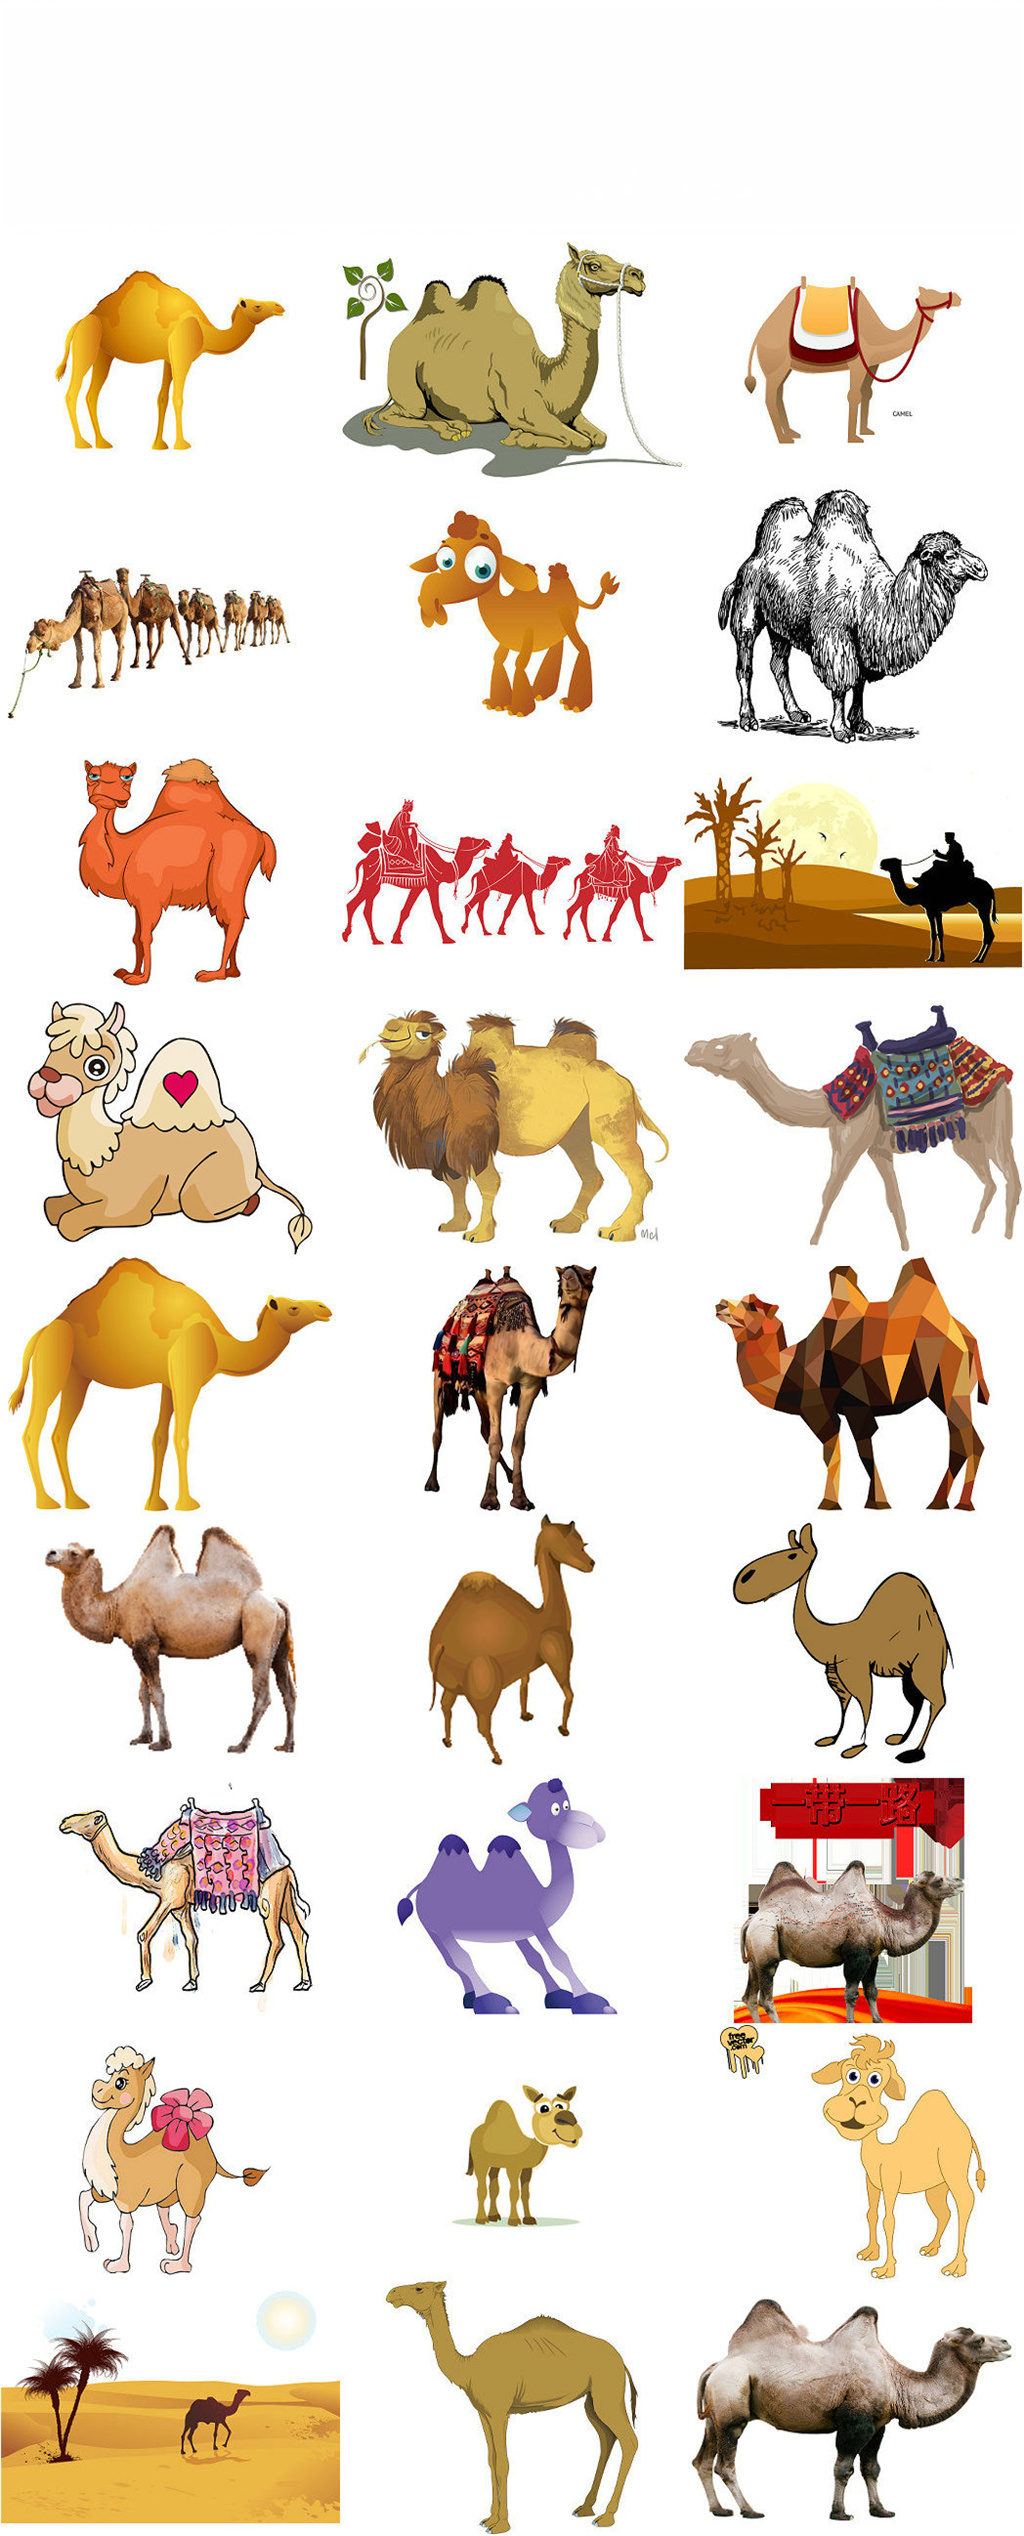 骆驼队骆驼沙漠骆驼背景骆驼群骆驼峰